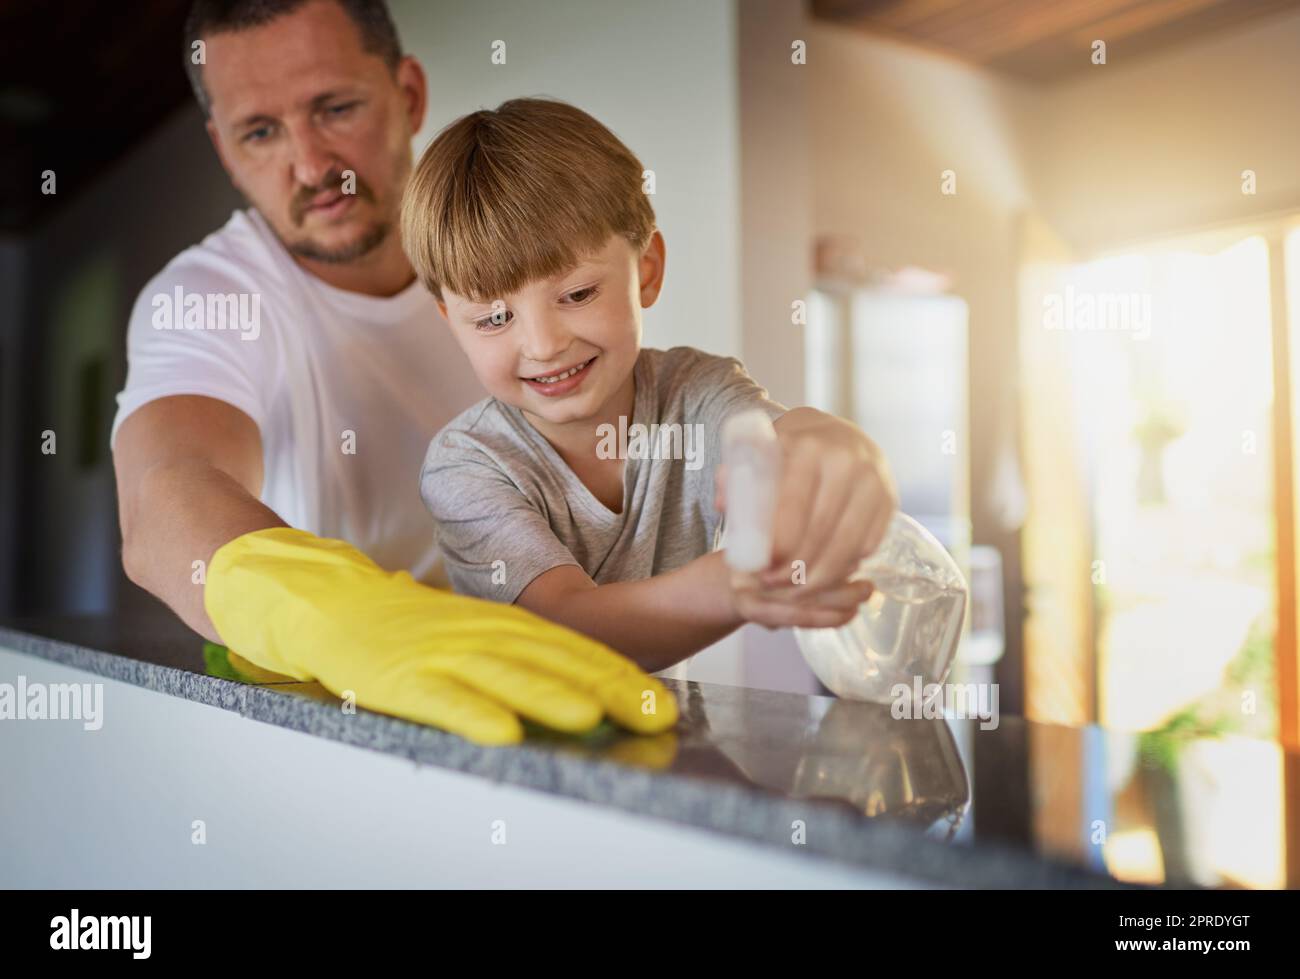 Beziehen Sie Ihre Kinder ein, um wichtige Beitragszahler zur Familie zu werden. Ein Vater und sein kleiner Sohn erledigen gemeinsam zu Hause Aufgaben. Stockfoto